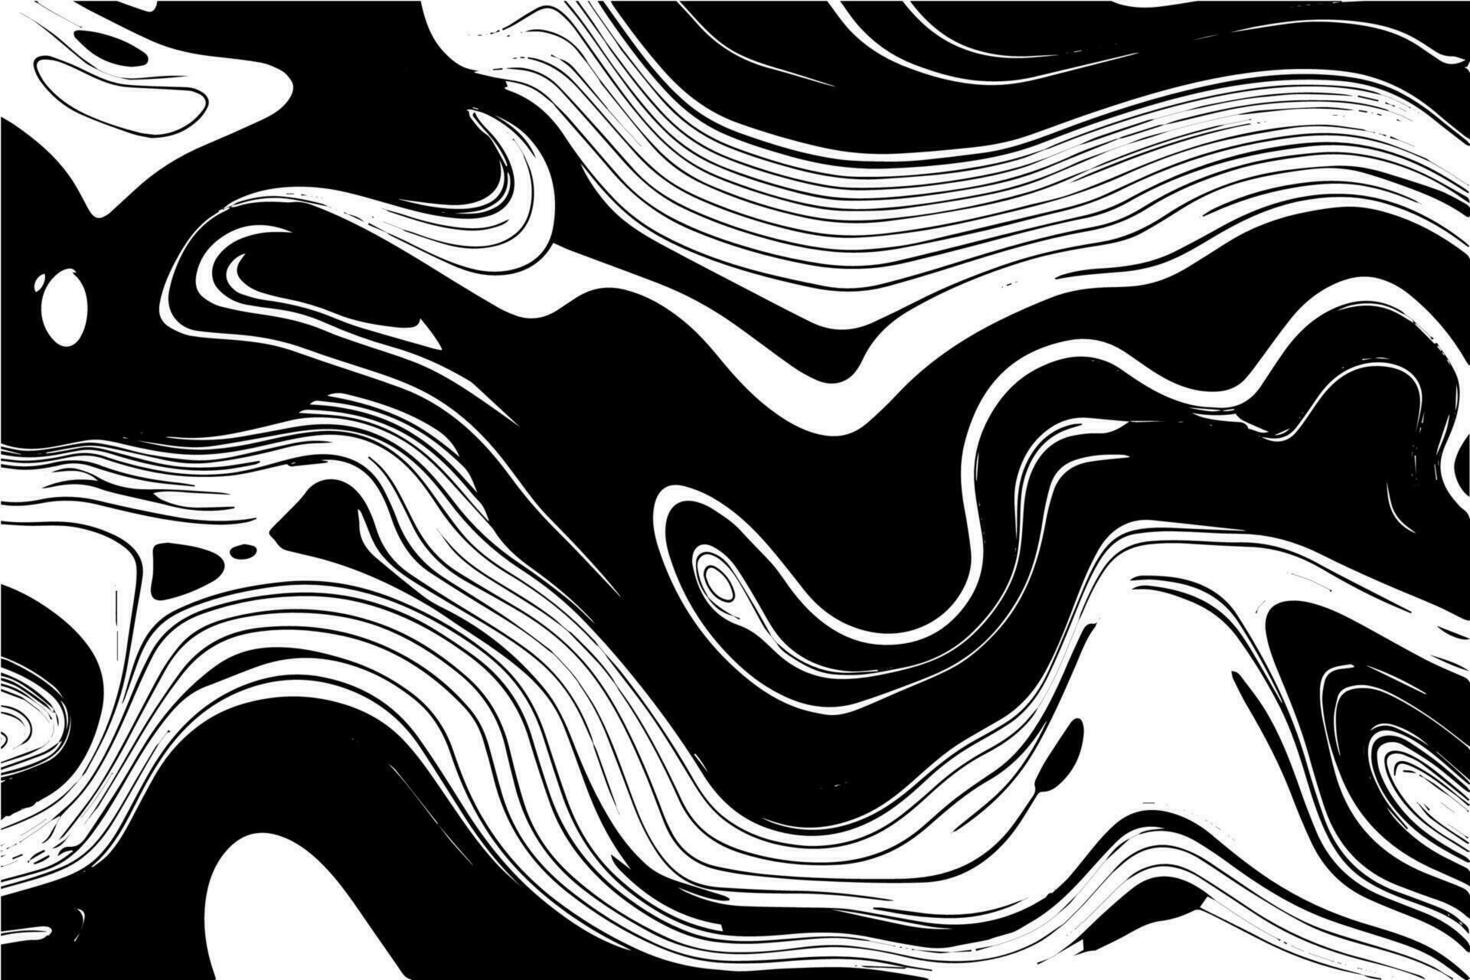 abstrakt Vektor wellig nahtlos Muster. modisch retro psychedelisch Hintergrund im 60er, 70er, 80er Jahre Stil. Textur im y2k ästhetisch.